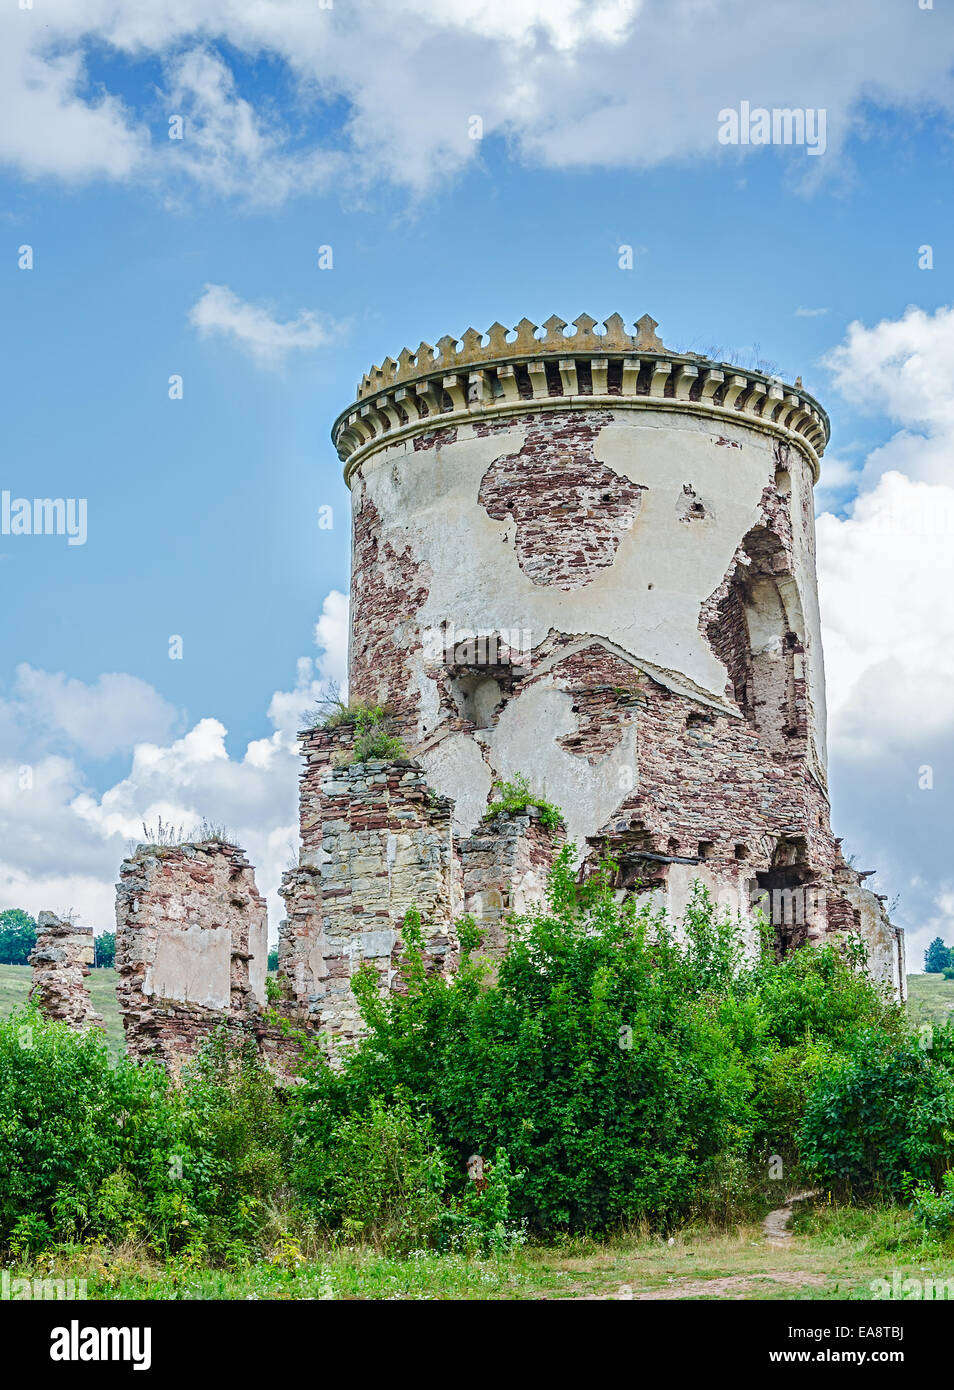 Ruines de la vieille tour médiévale en Europe centrale Banque D'Images